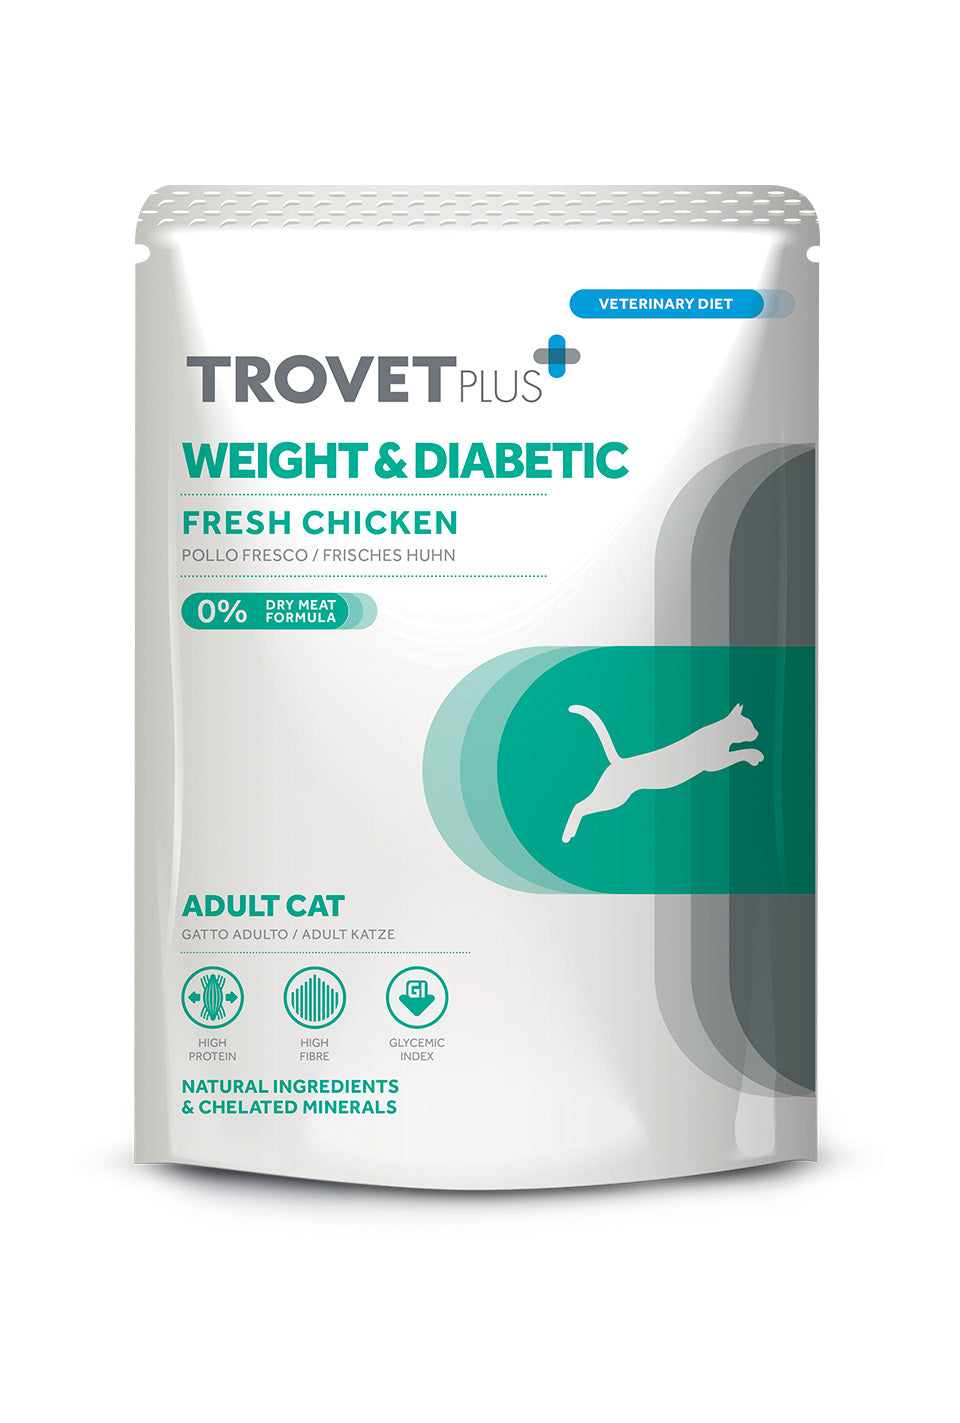 Weight & Diabetic - Pollo fresco - Gatto adulto